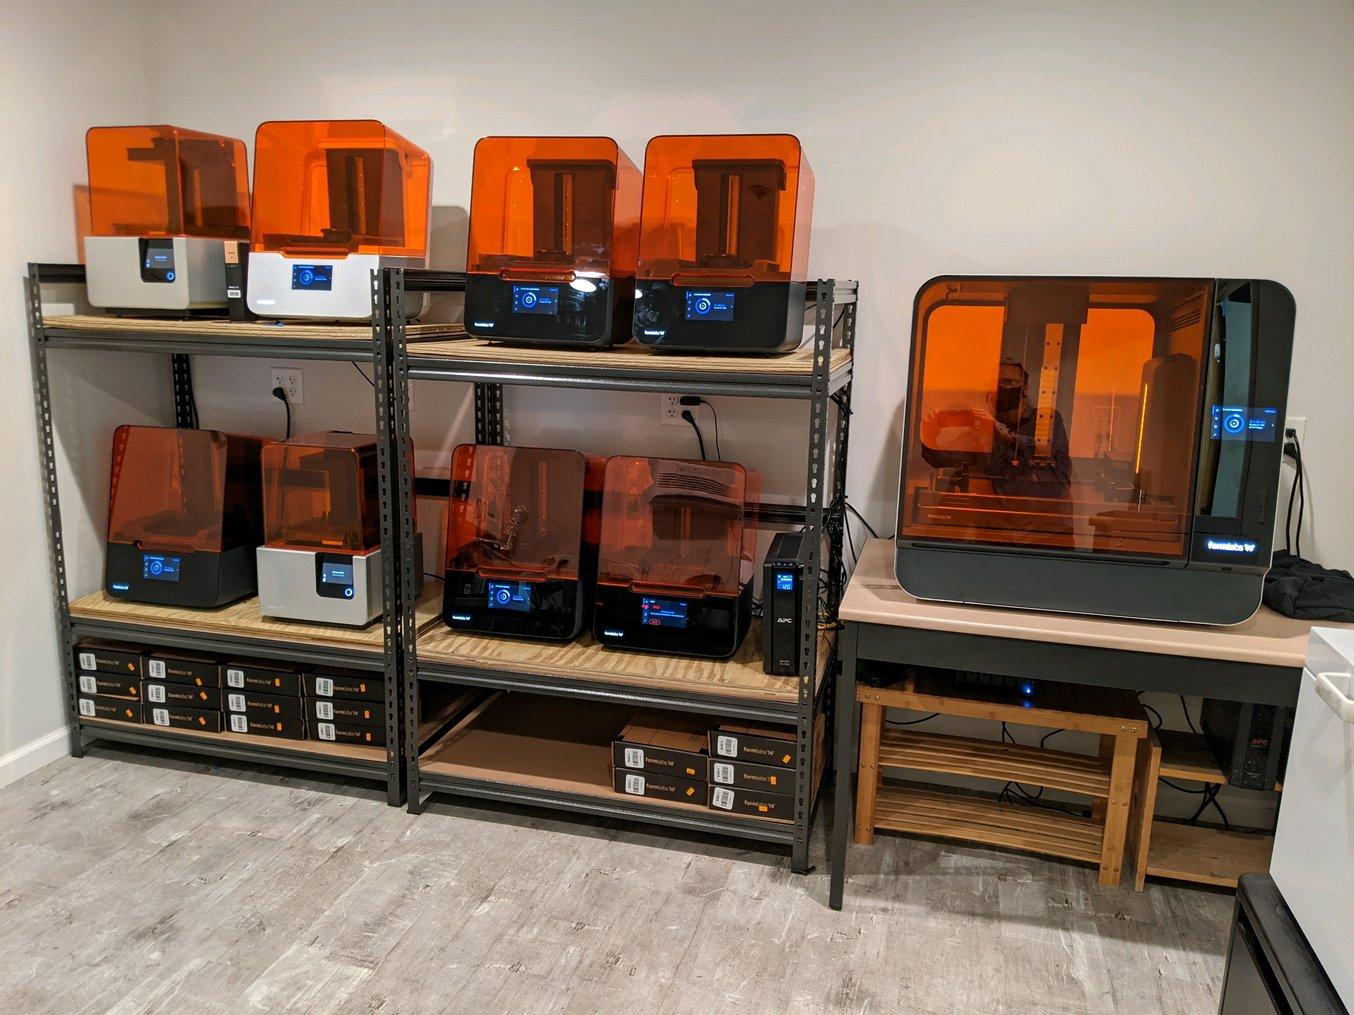 "Ninguna impresora 3D es perfecta. Tienes que decidir qué es importante para tu laboratorio". - Phil Pelligra